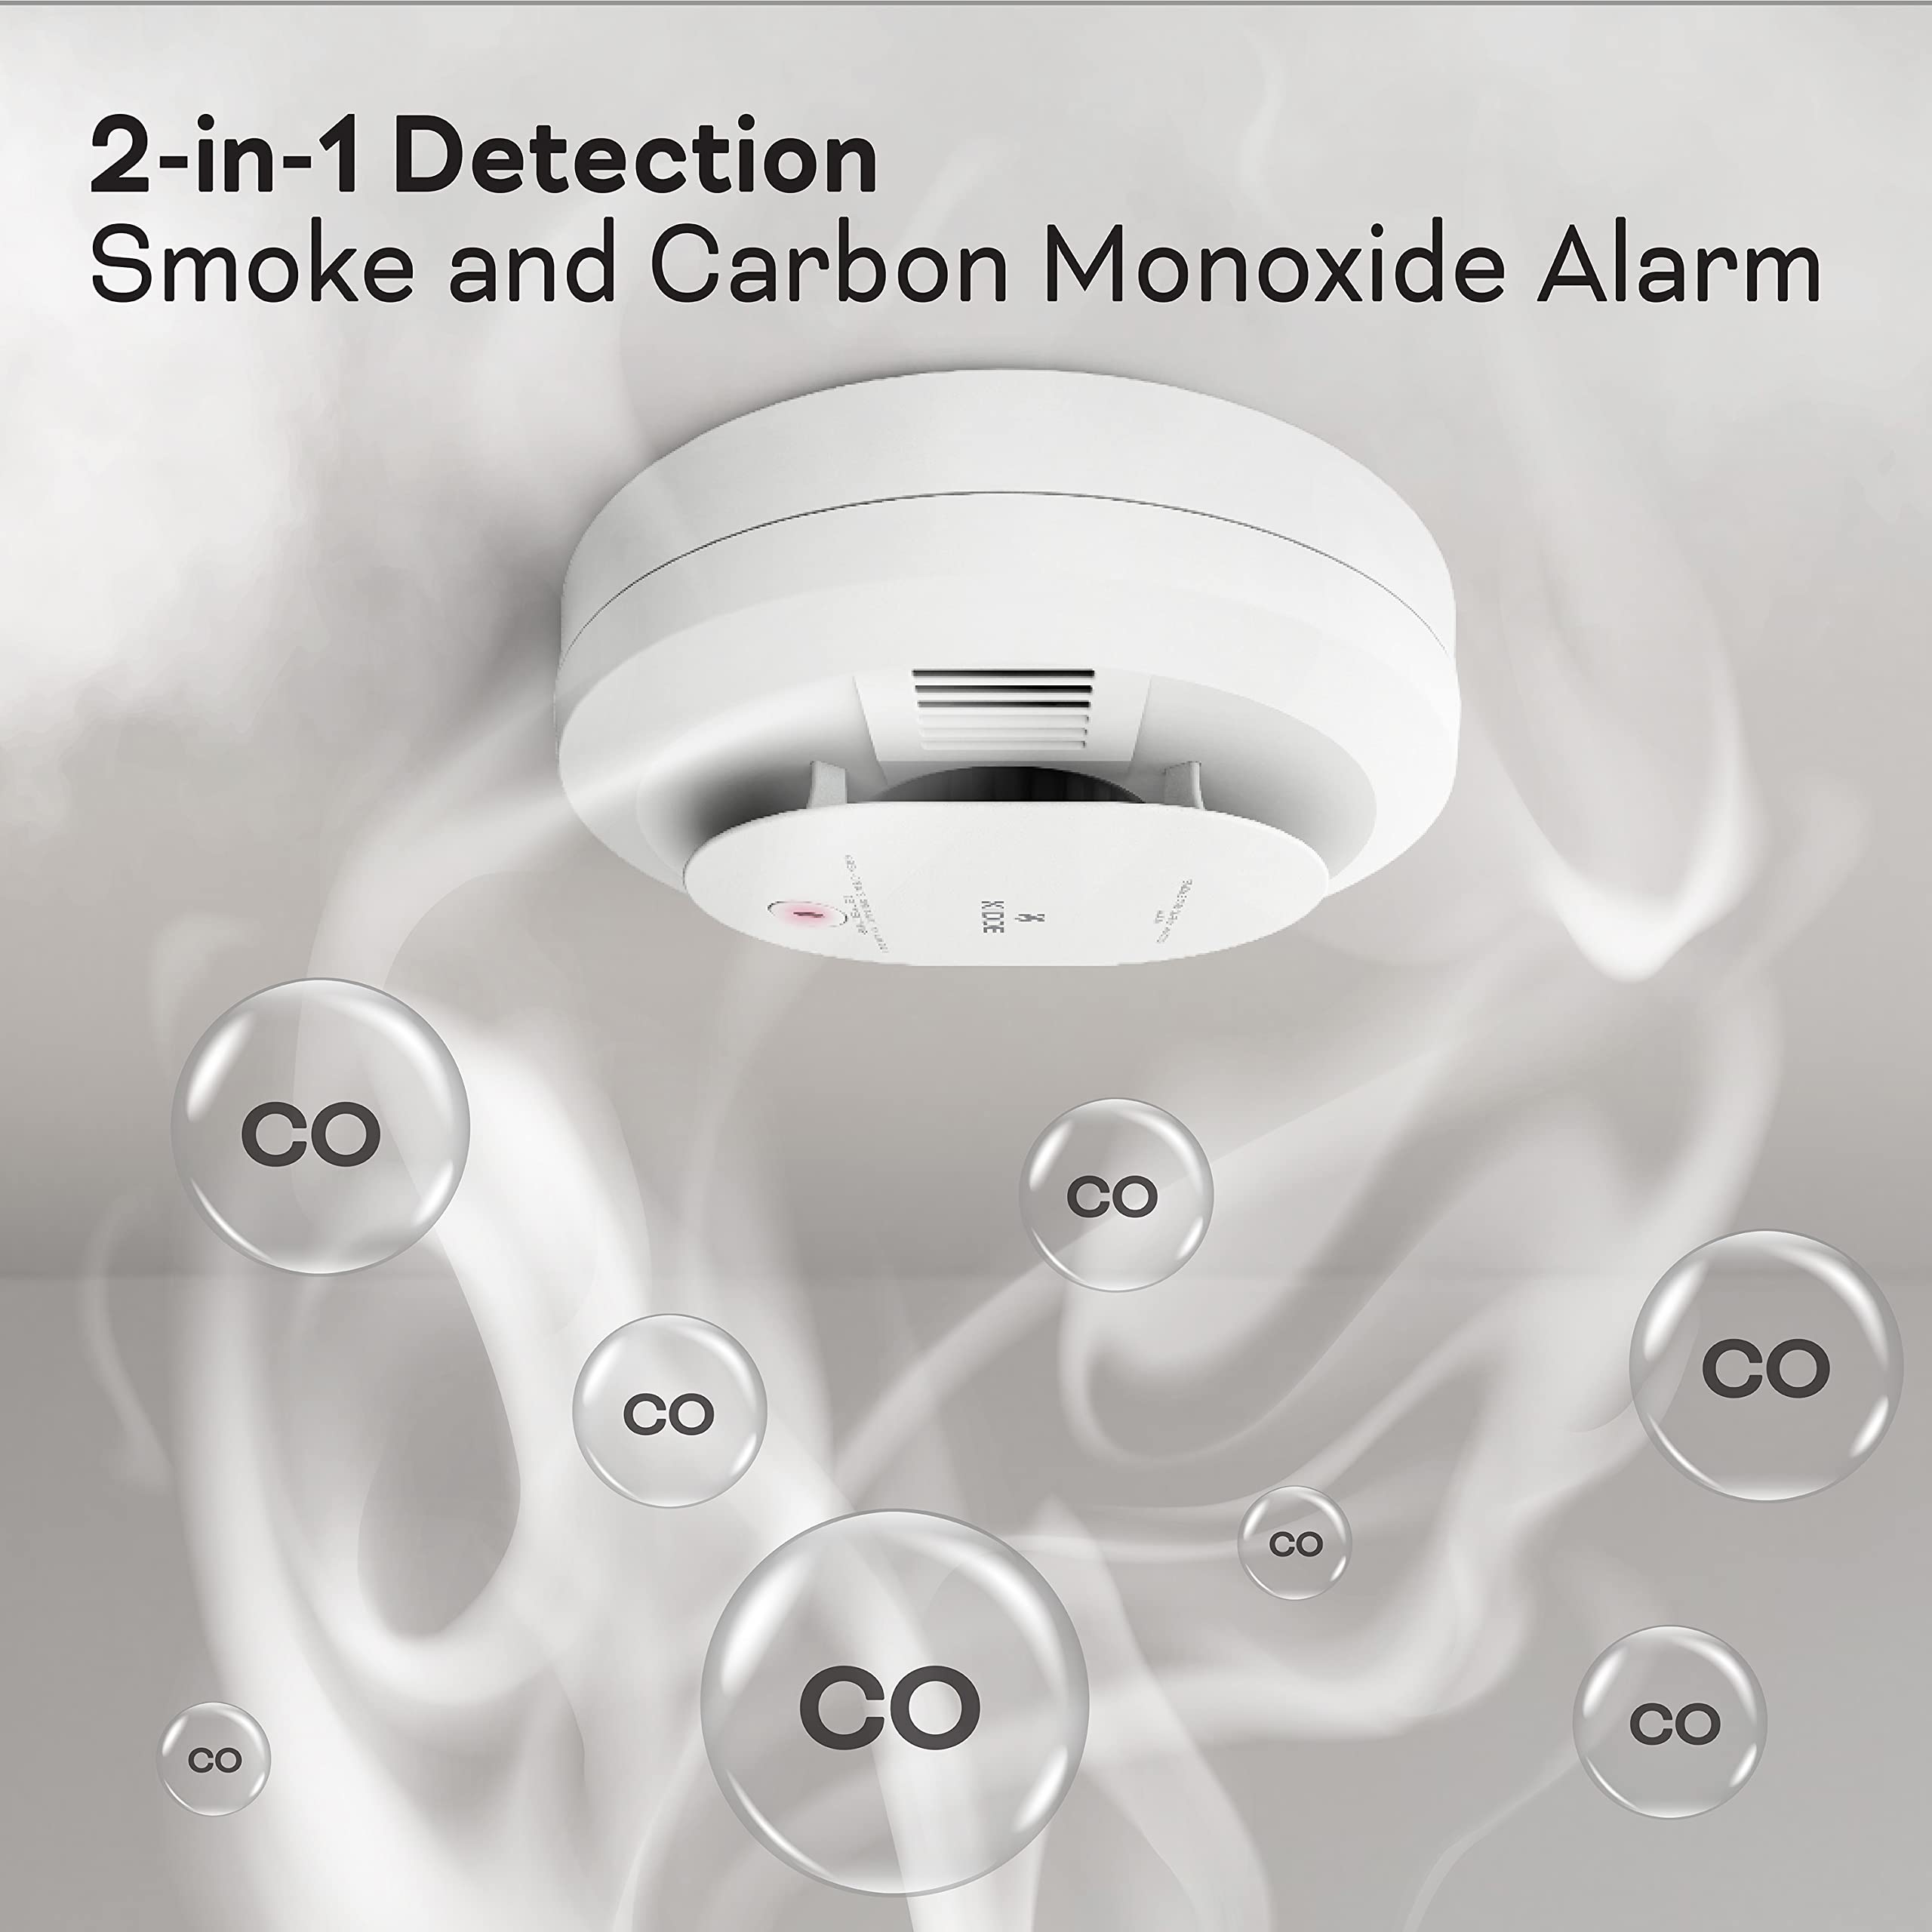 Kidde Smoke and Carbon Monoxide Alarm  - Like New